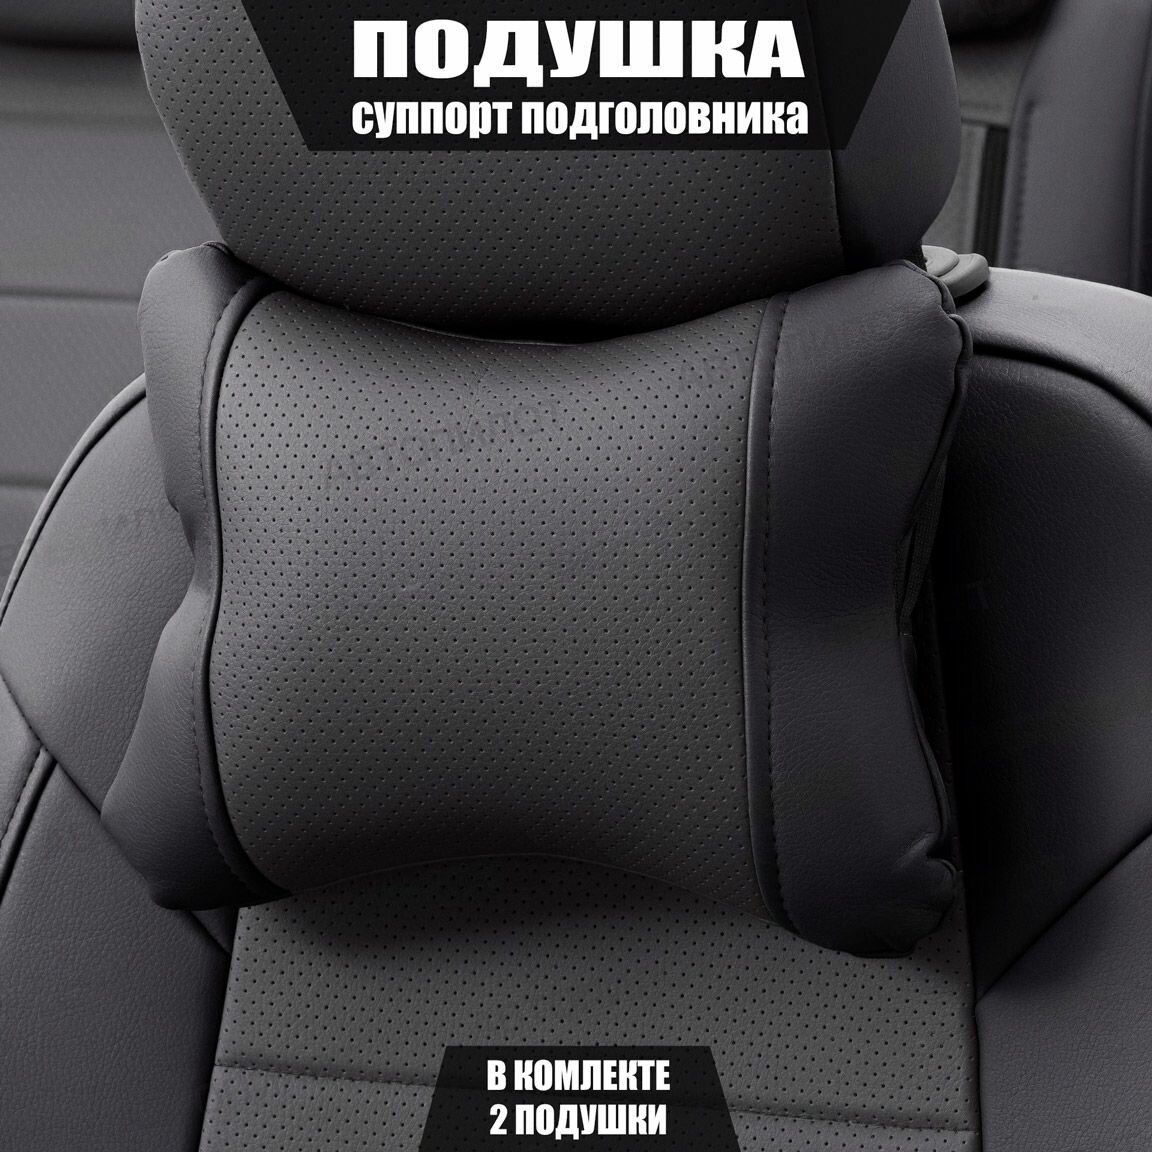 Подушки под шею (суппорт подголовника) для Мазда цкс-5 (2015 - 2017) внедорожник 5 дверей / Mazda CX-5 Экокожа 2 подушки Черный